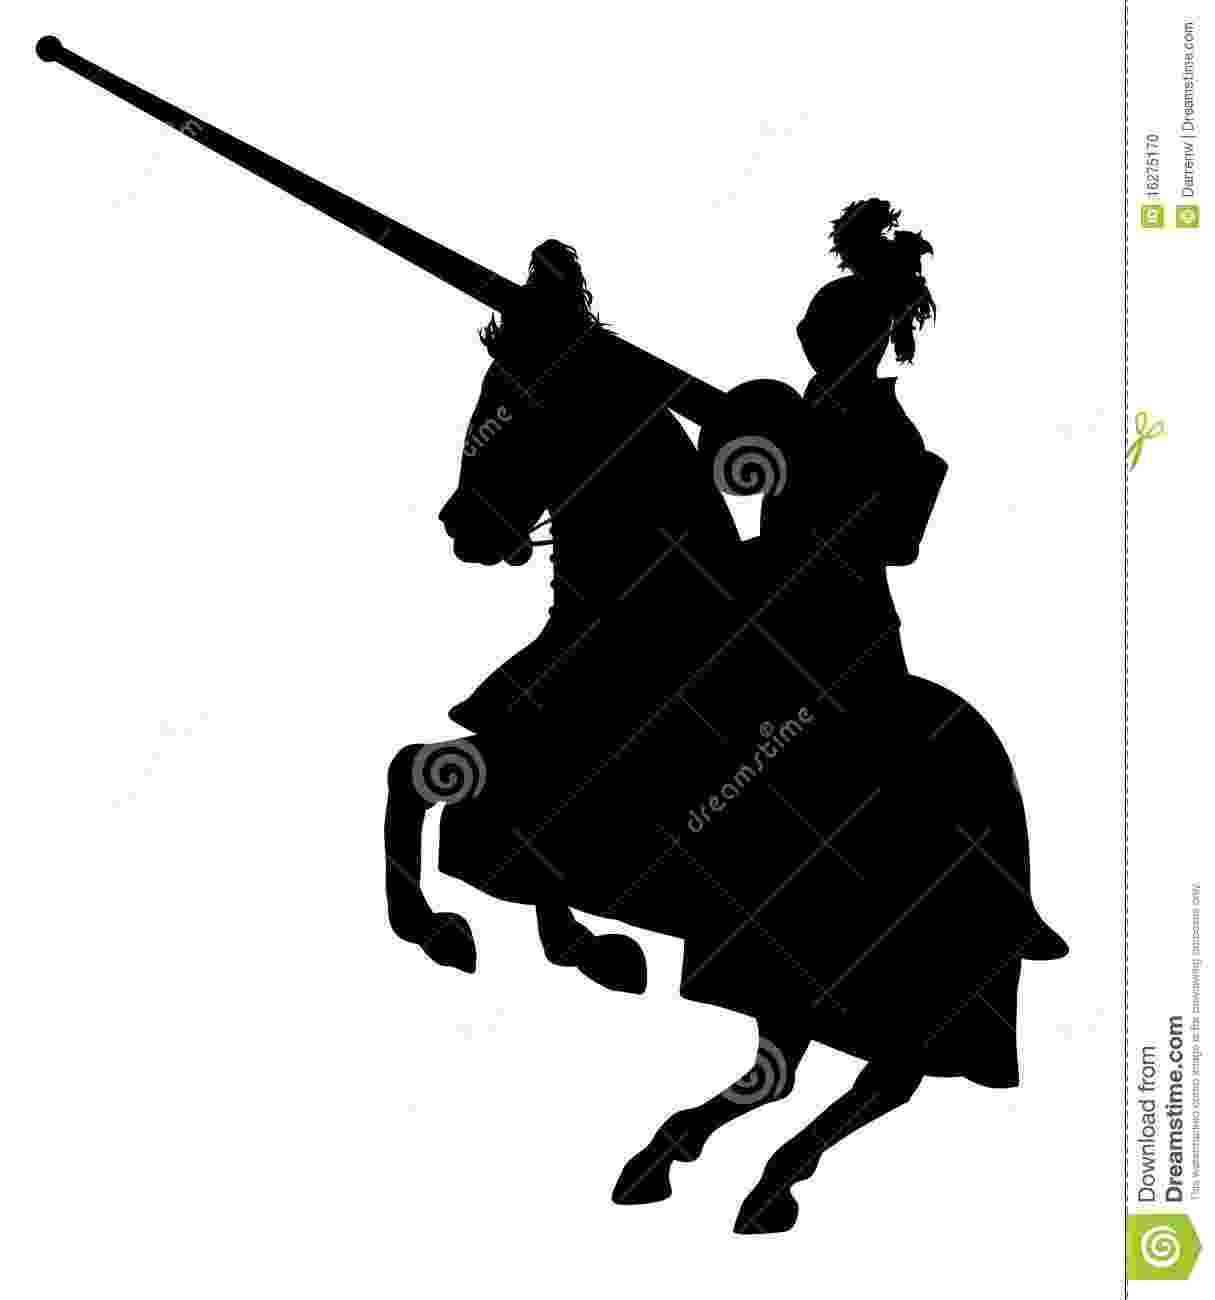 knight on horseback knight stock illustration illustration of charge horseback knight on 